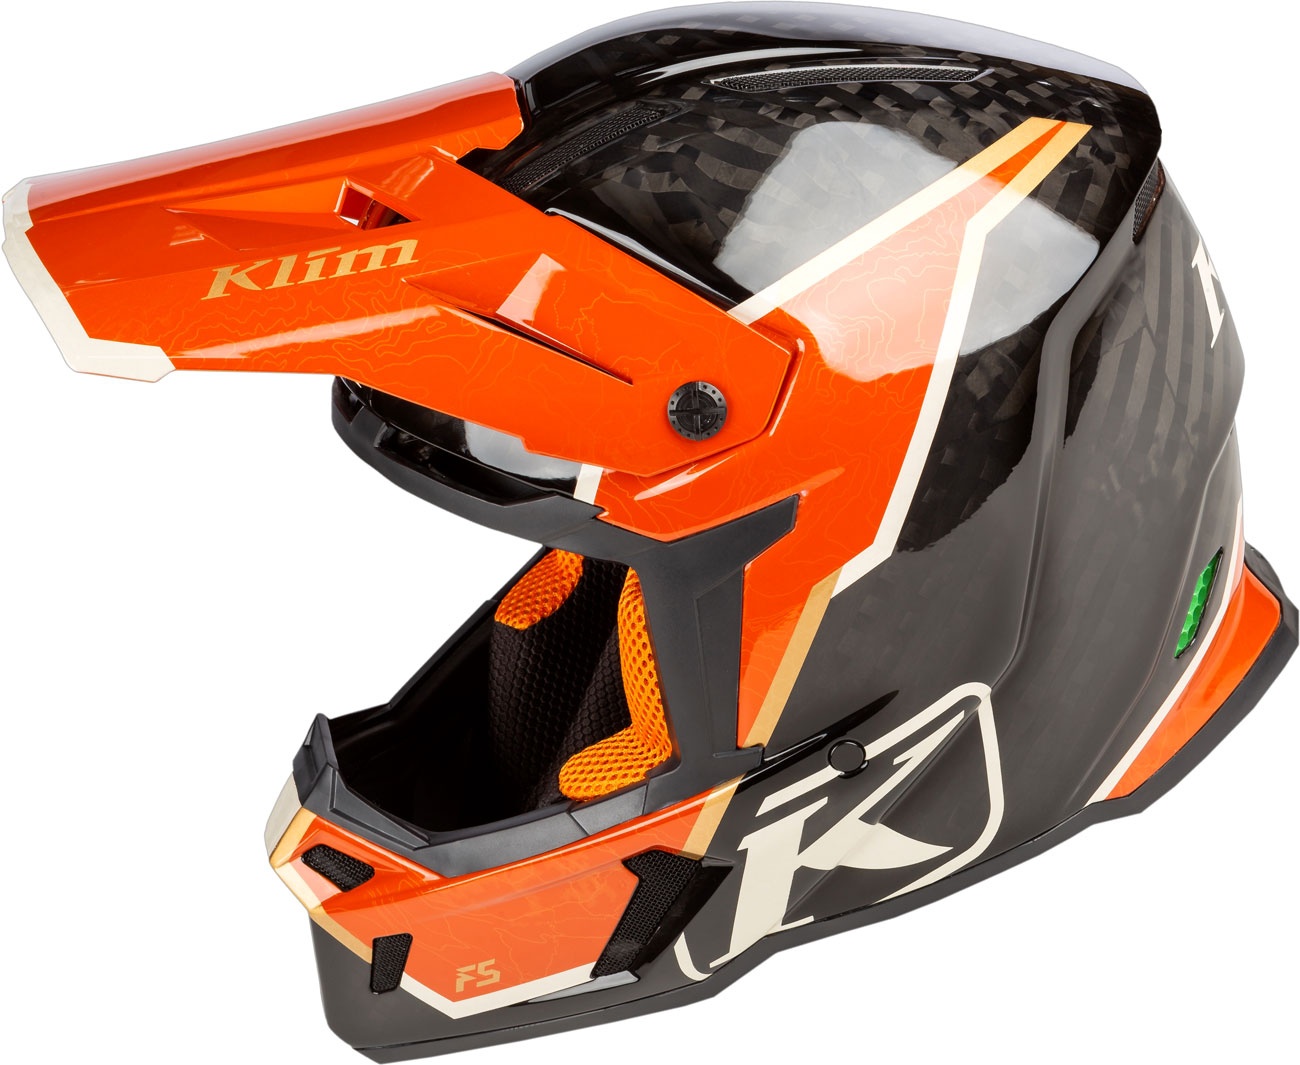 Klim F5 Koroyd Topo, Motocrosshelm - Schwarz/Orange - S